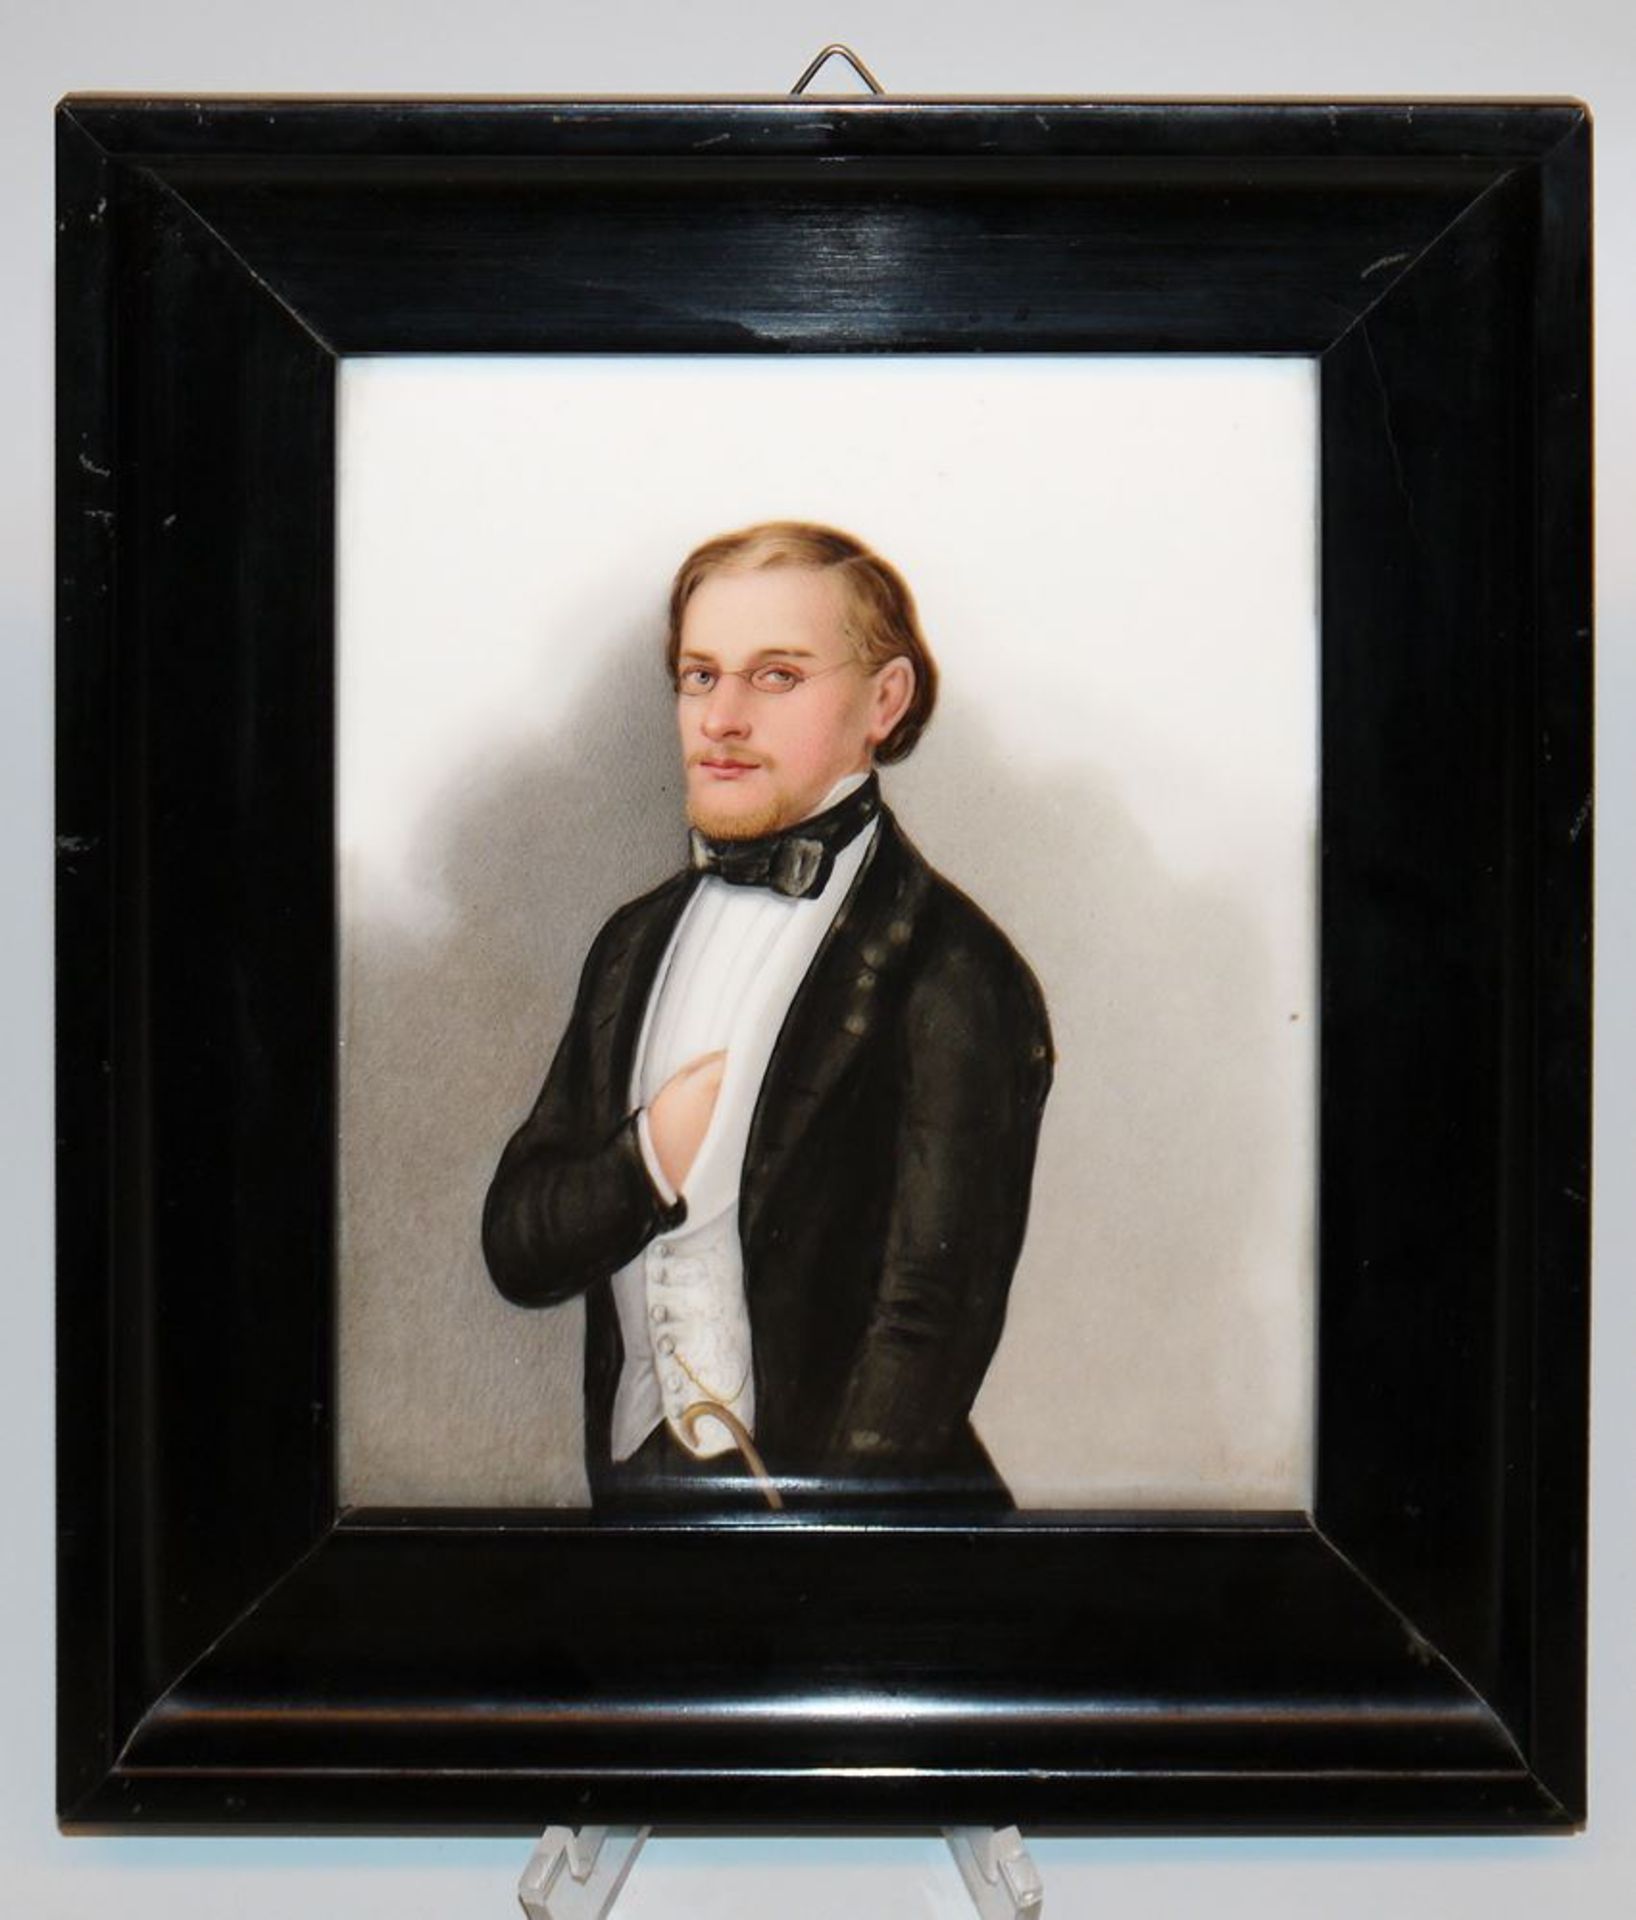 Porzellanplatte mit Biedermeier-Porträt eines jungen Mannes von 1854, monogrammiert, Adlermarke, KP